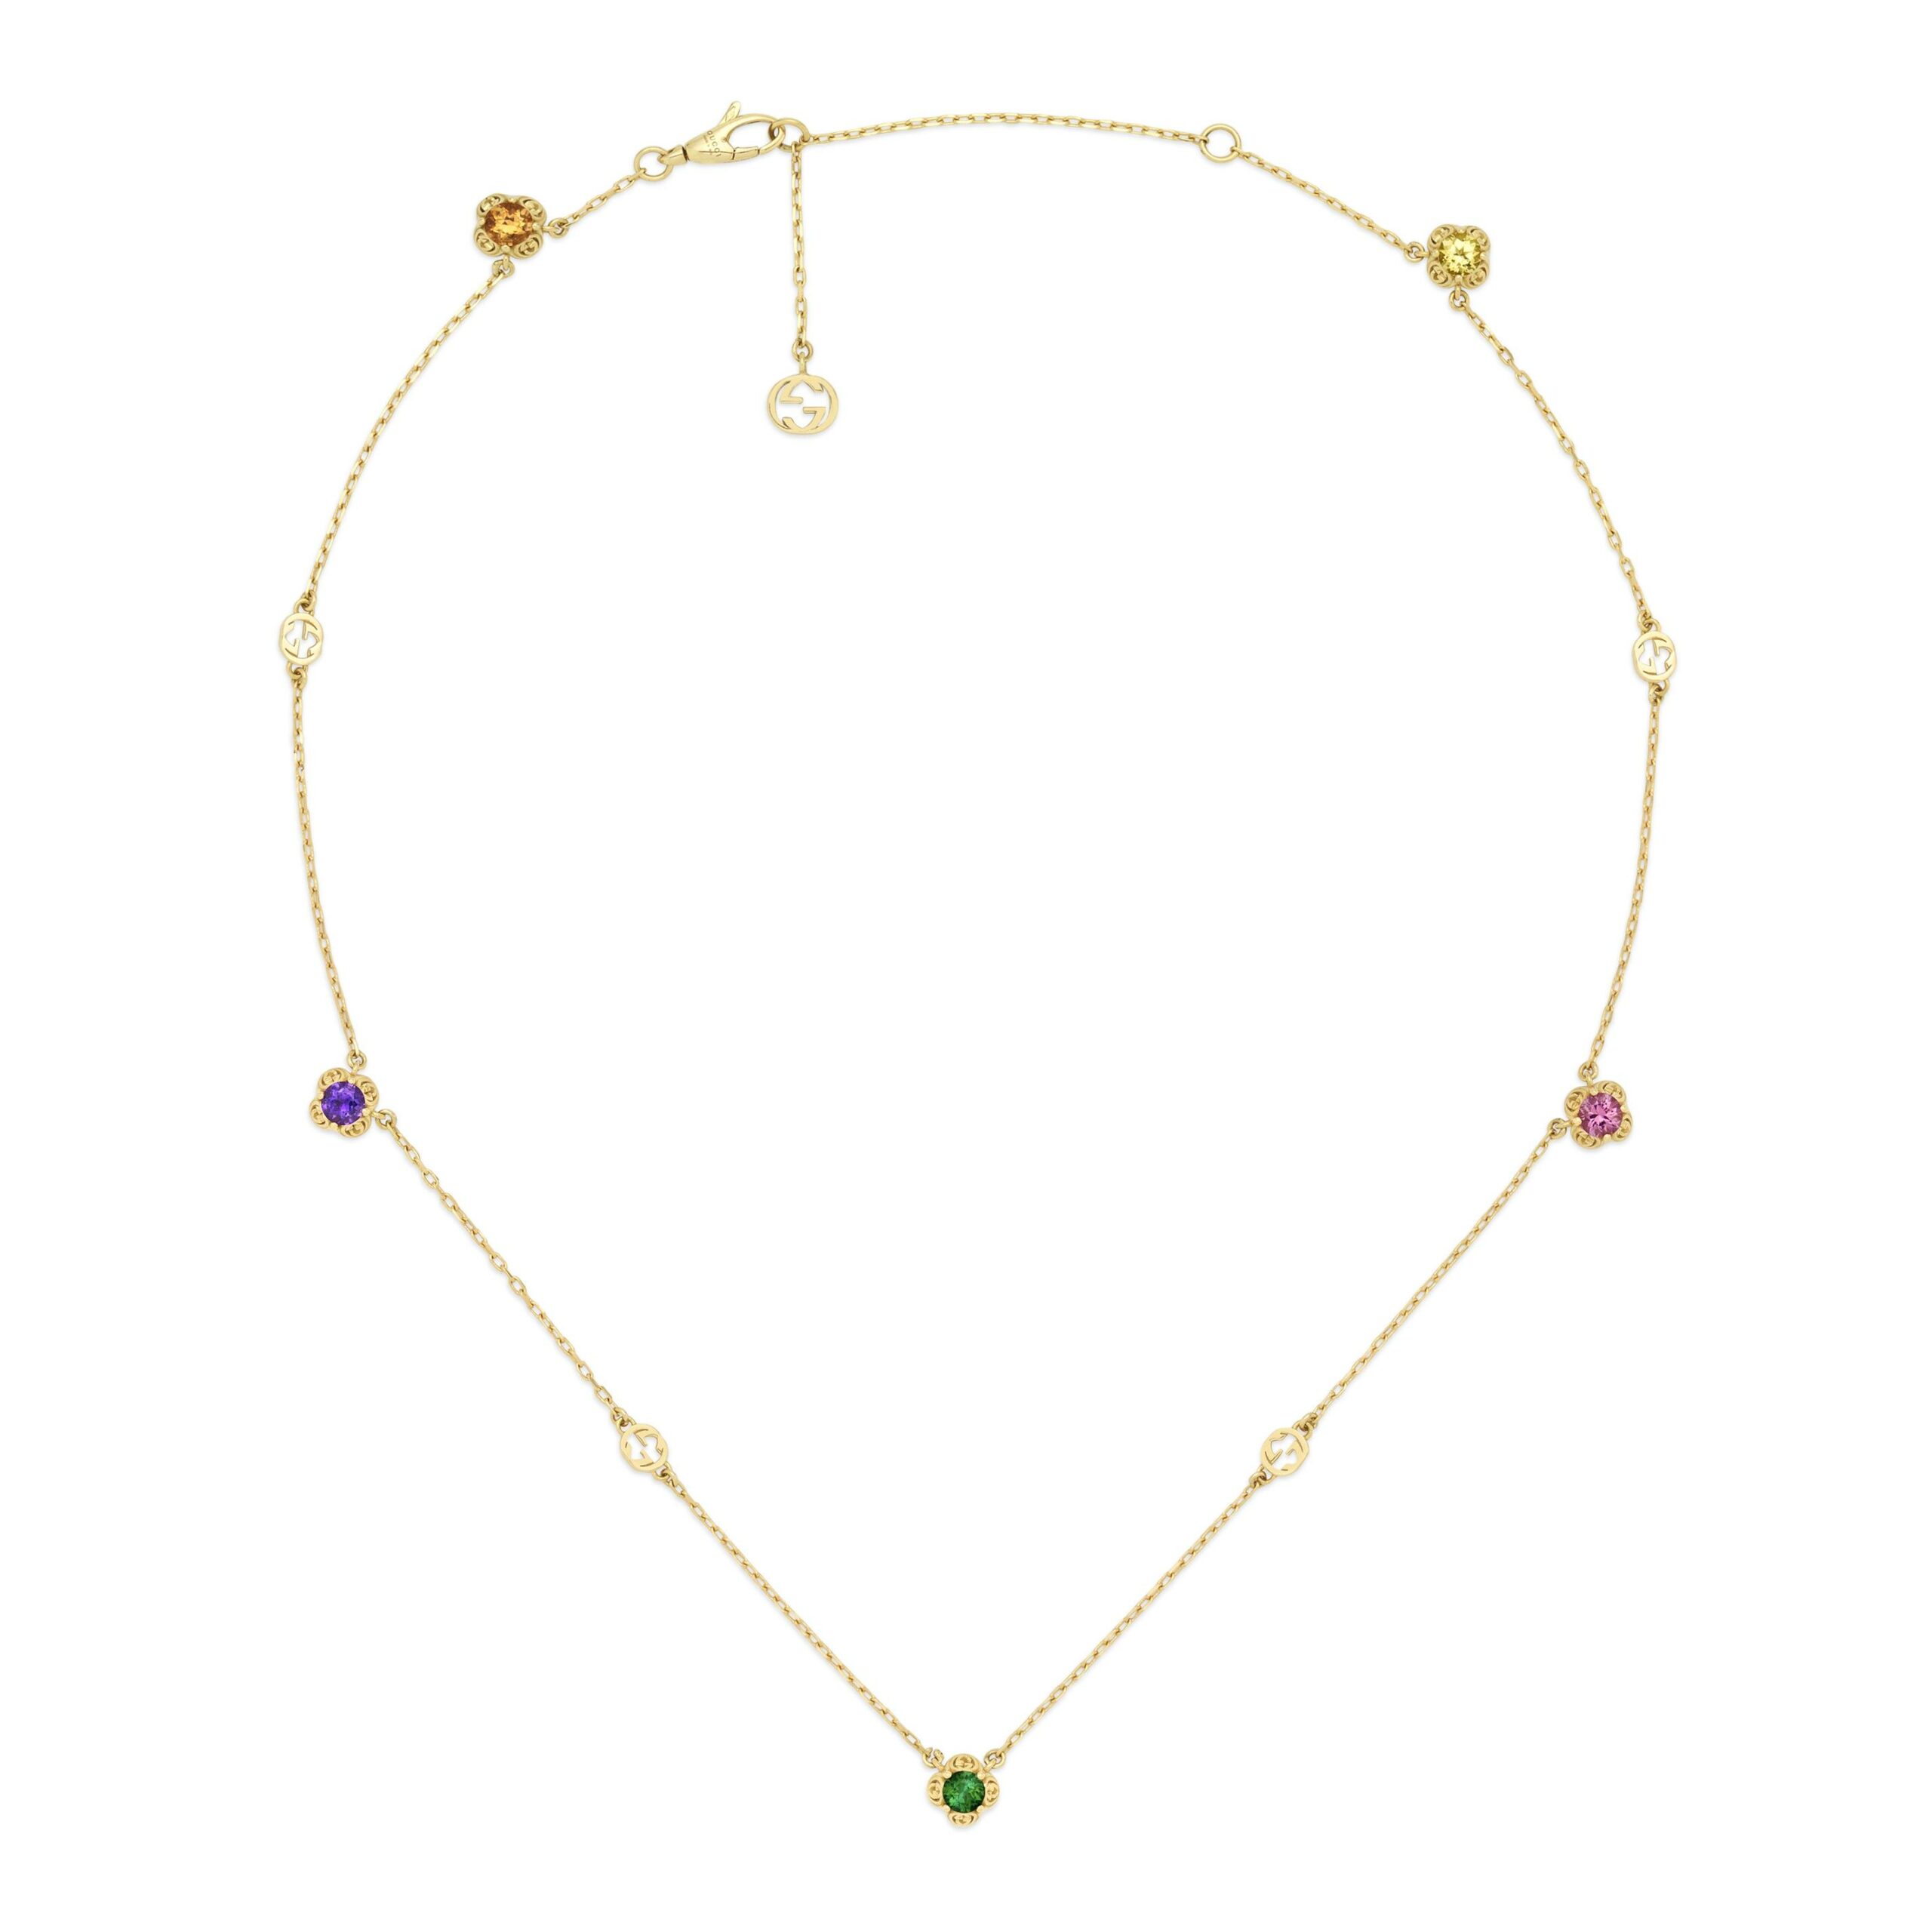 Gucci Collana Interlocking G 18 carati con pietre preziose necklace preciuse stones gold sconto discount